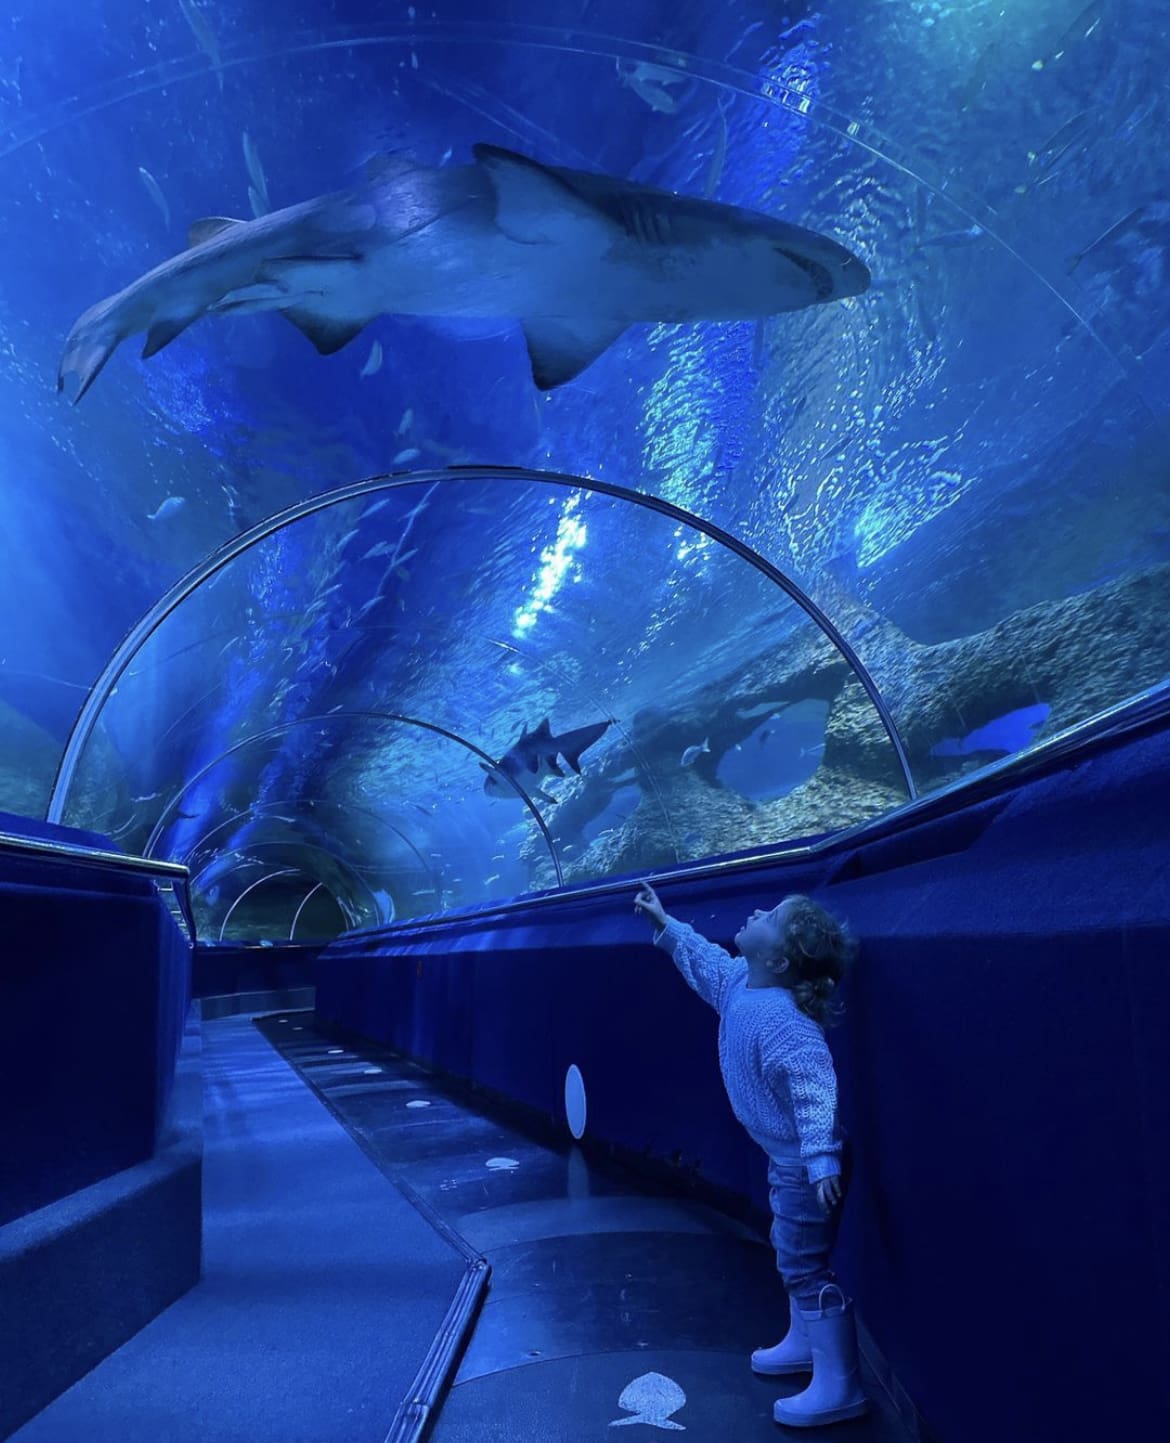 AQWA (The Aquarium of Western Australia)